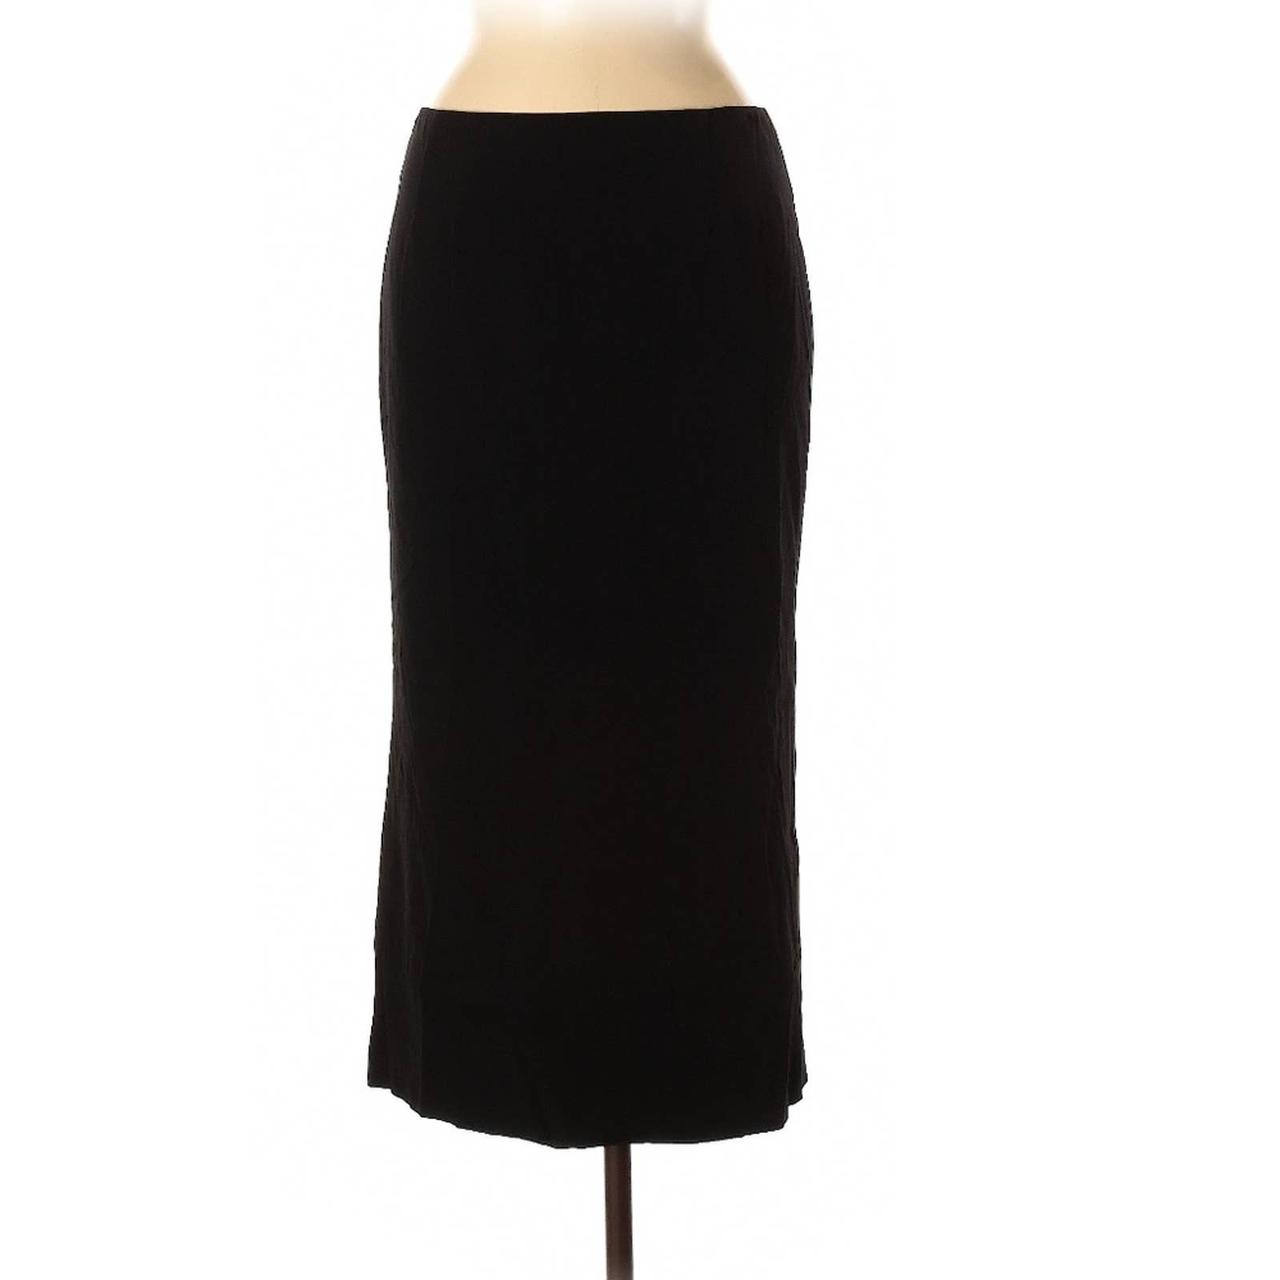 Chloé Women's Black Skirt